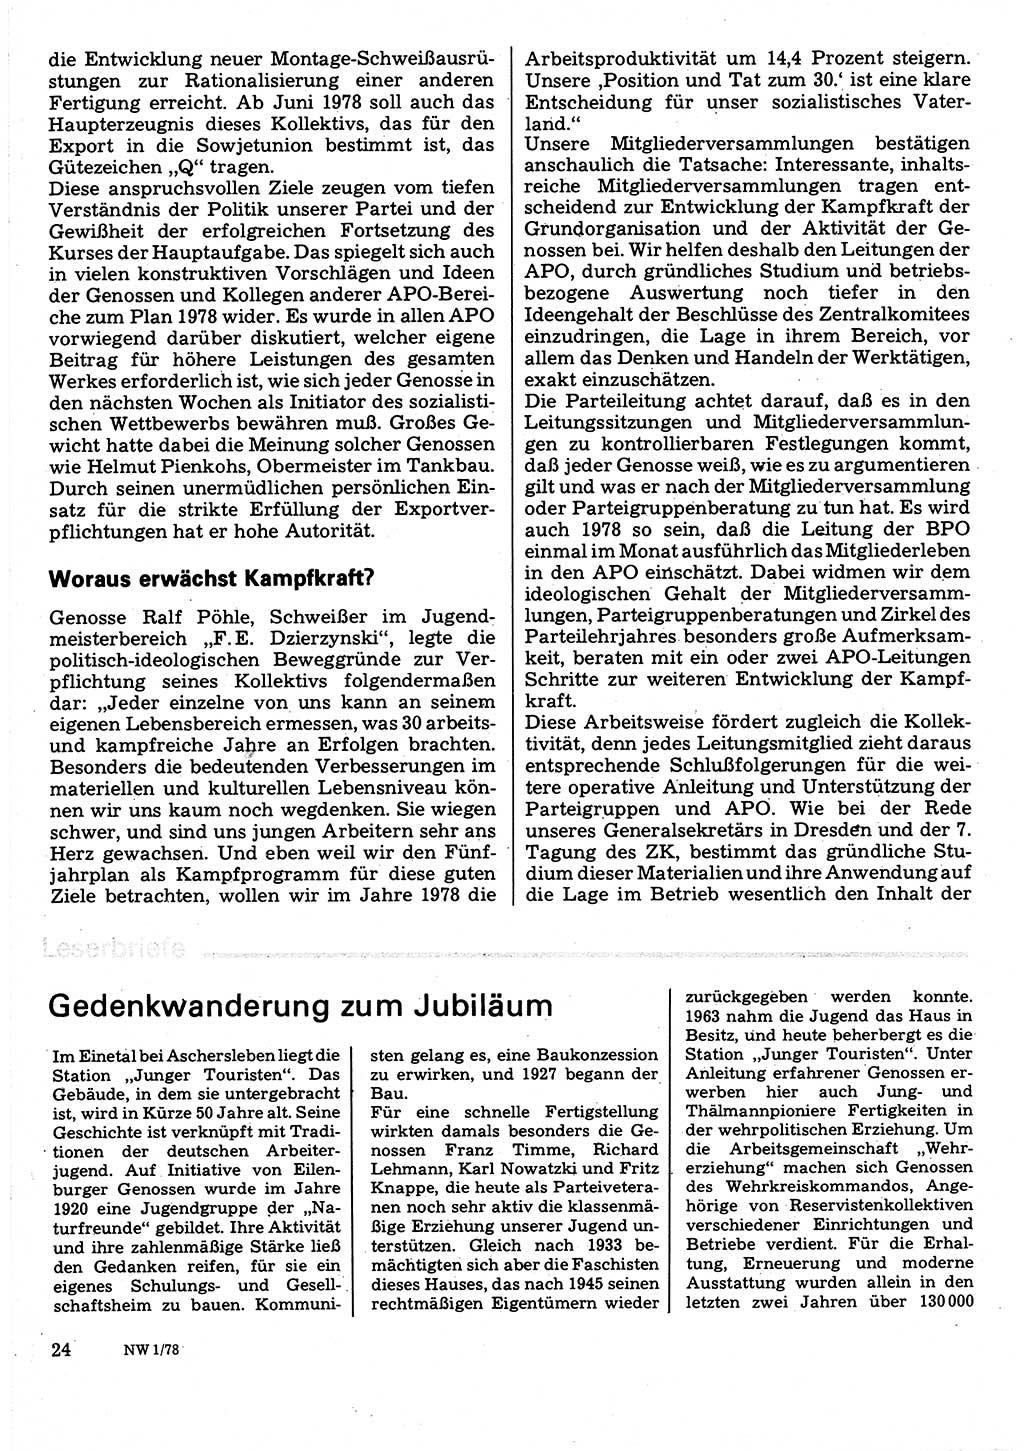 Neuer Weg (NW), Organ des Zentralkomitees (ZK) der SED (Sozialistische Einheitspartei Deutschlands) für Fragen des Parteilebens, 33. Jahrgang [Deutsche Demokratische Republik (DDR)] 1978, Seite 24 (NW ZK SED DDR 1978, S. 24)